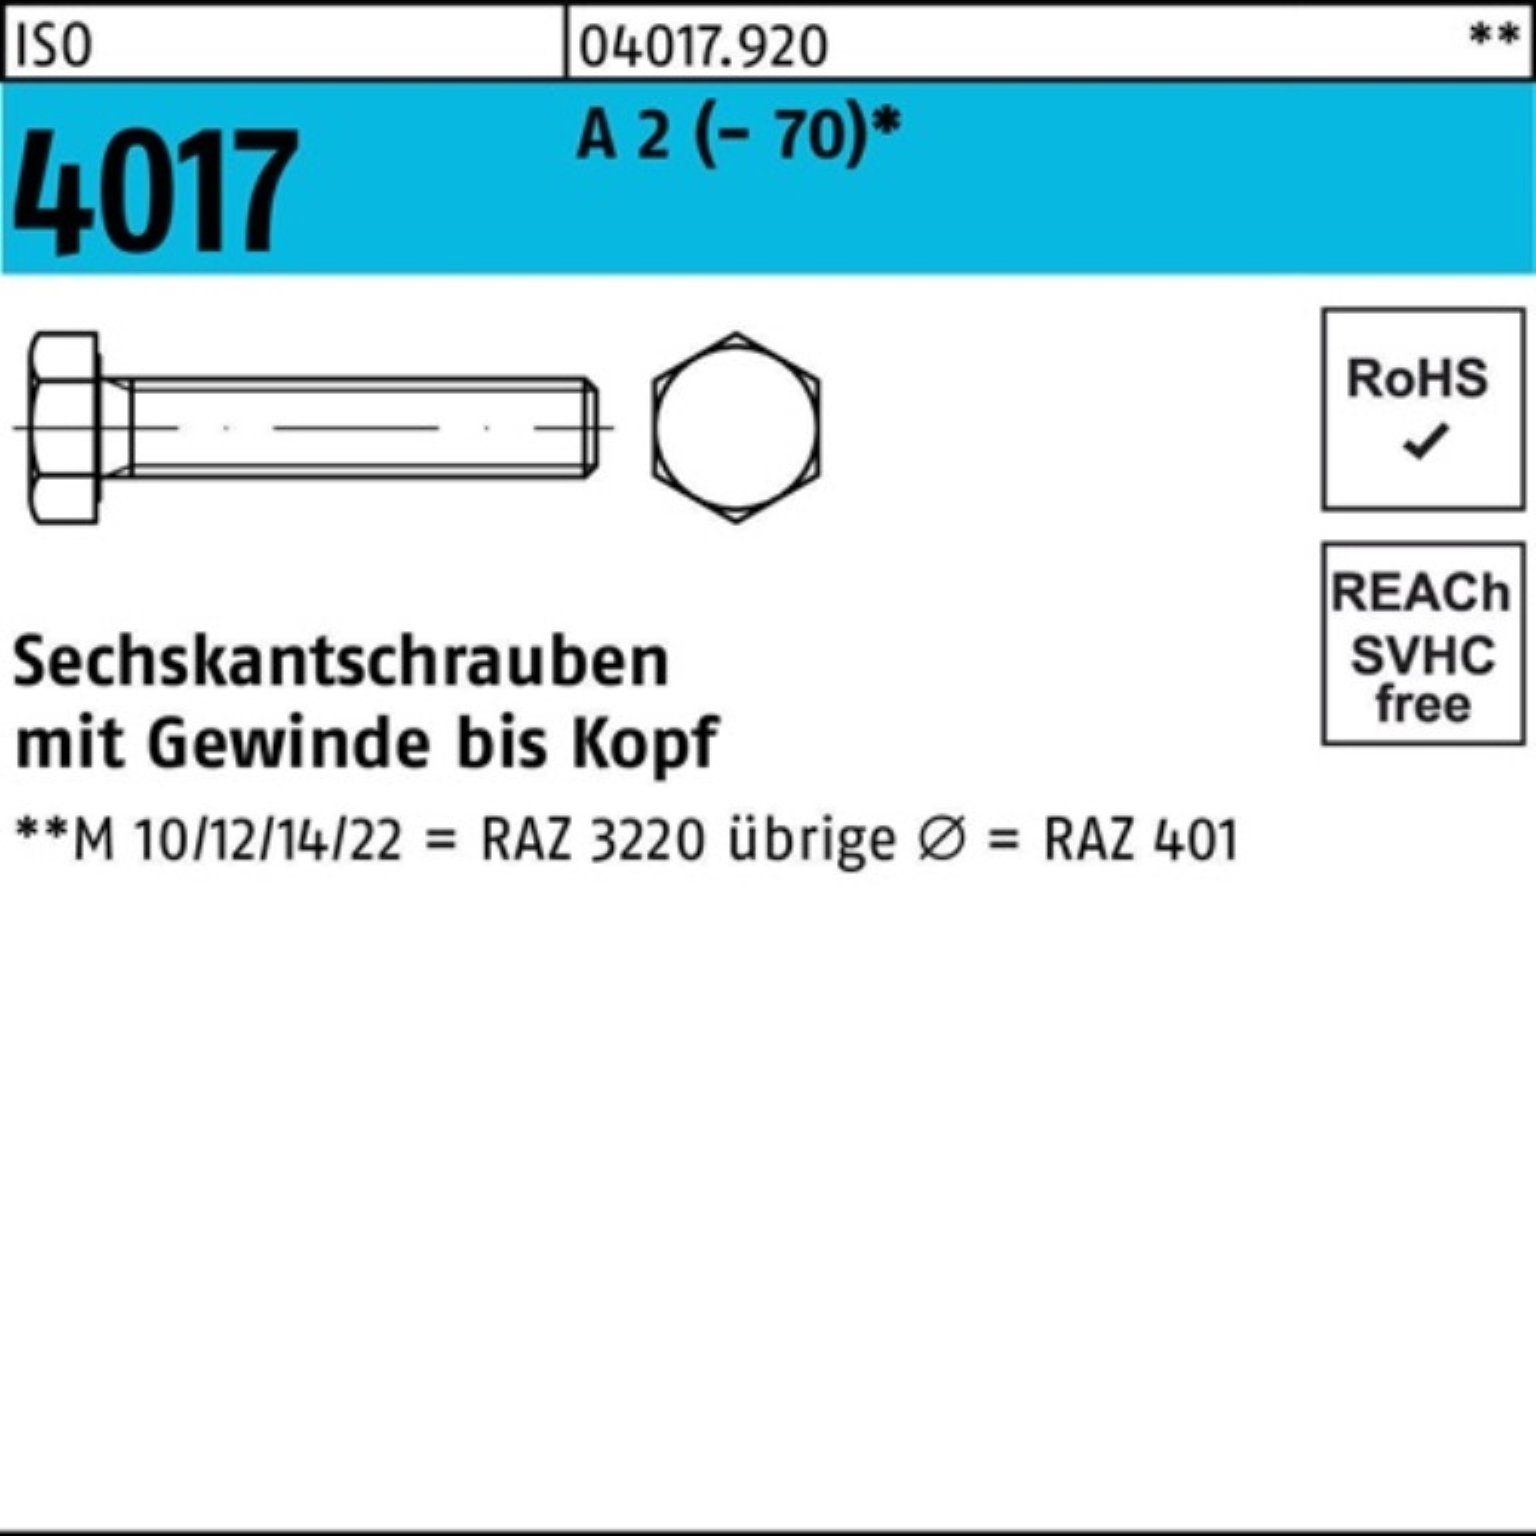 Bufab Sechskantschraube 100er Pack Sechskantschraube ISO 4017 VG M33x 100 A 2 (70) 1 Stück